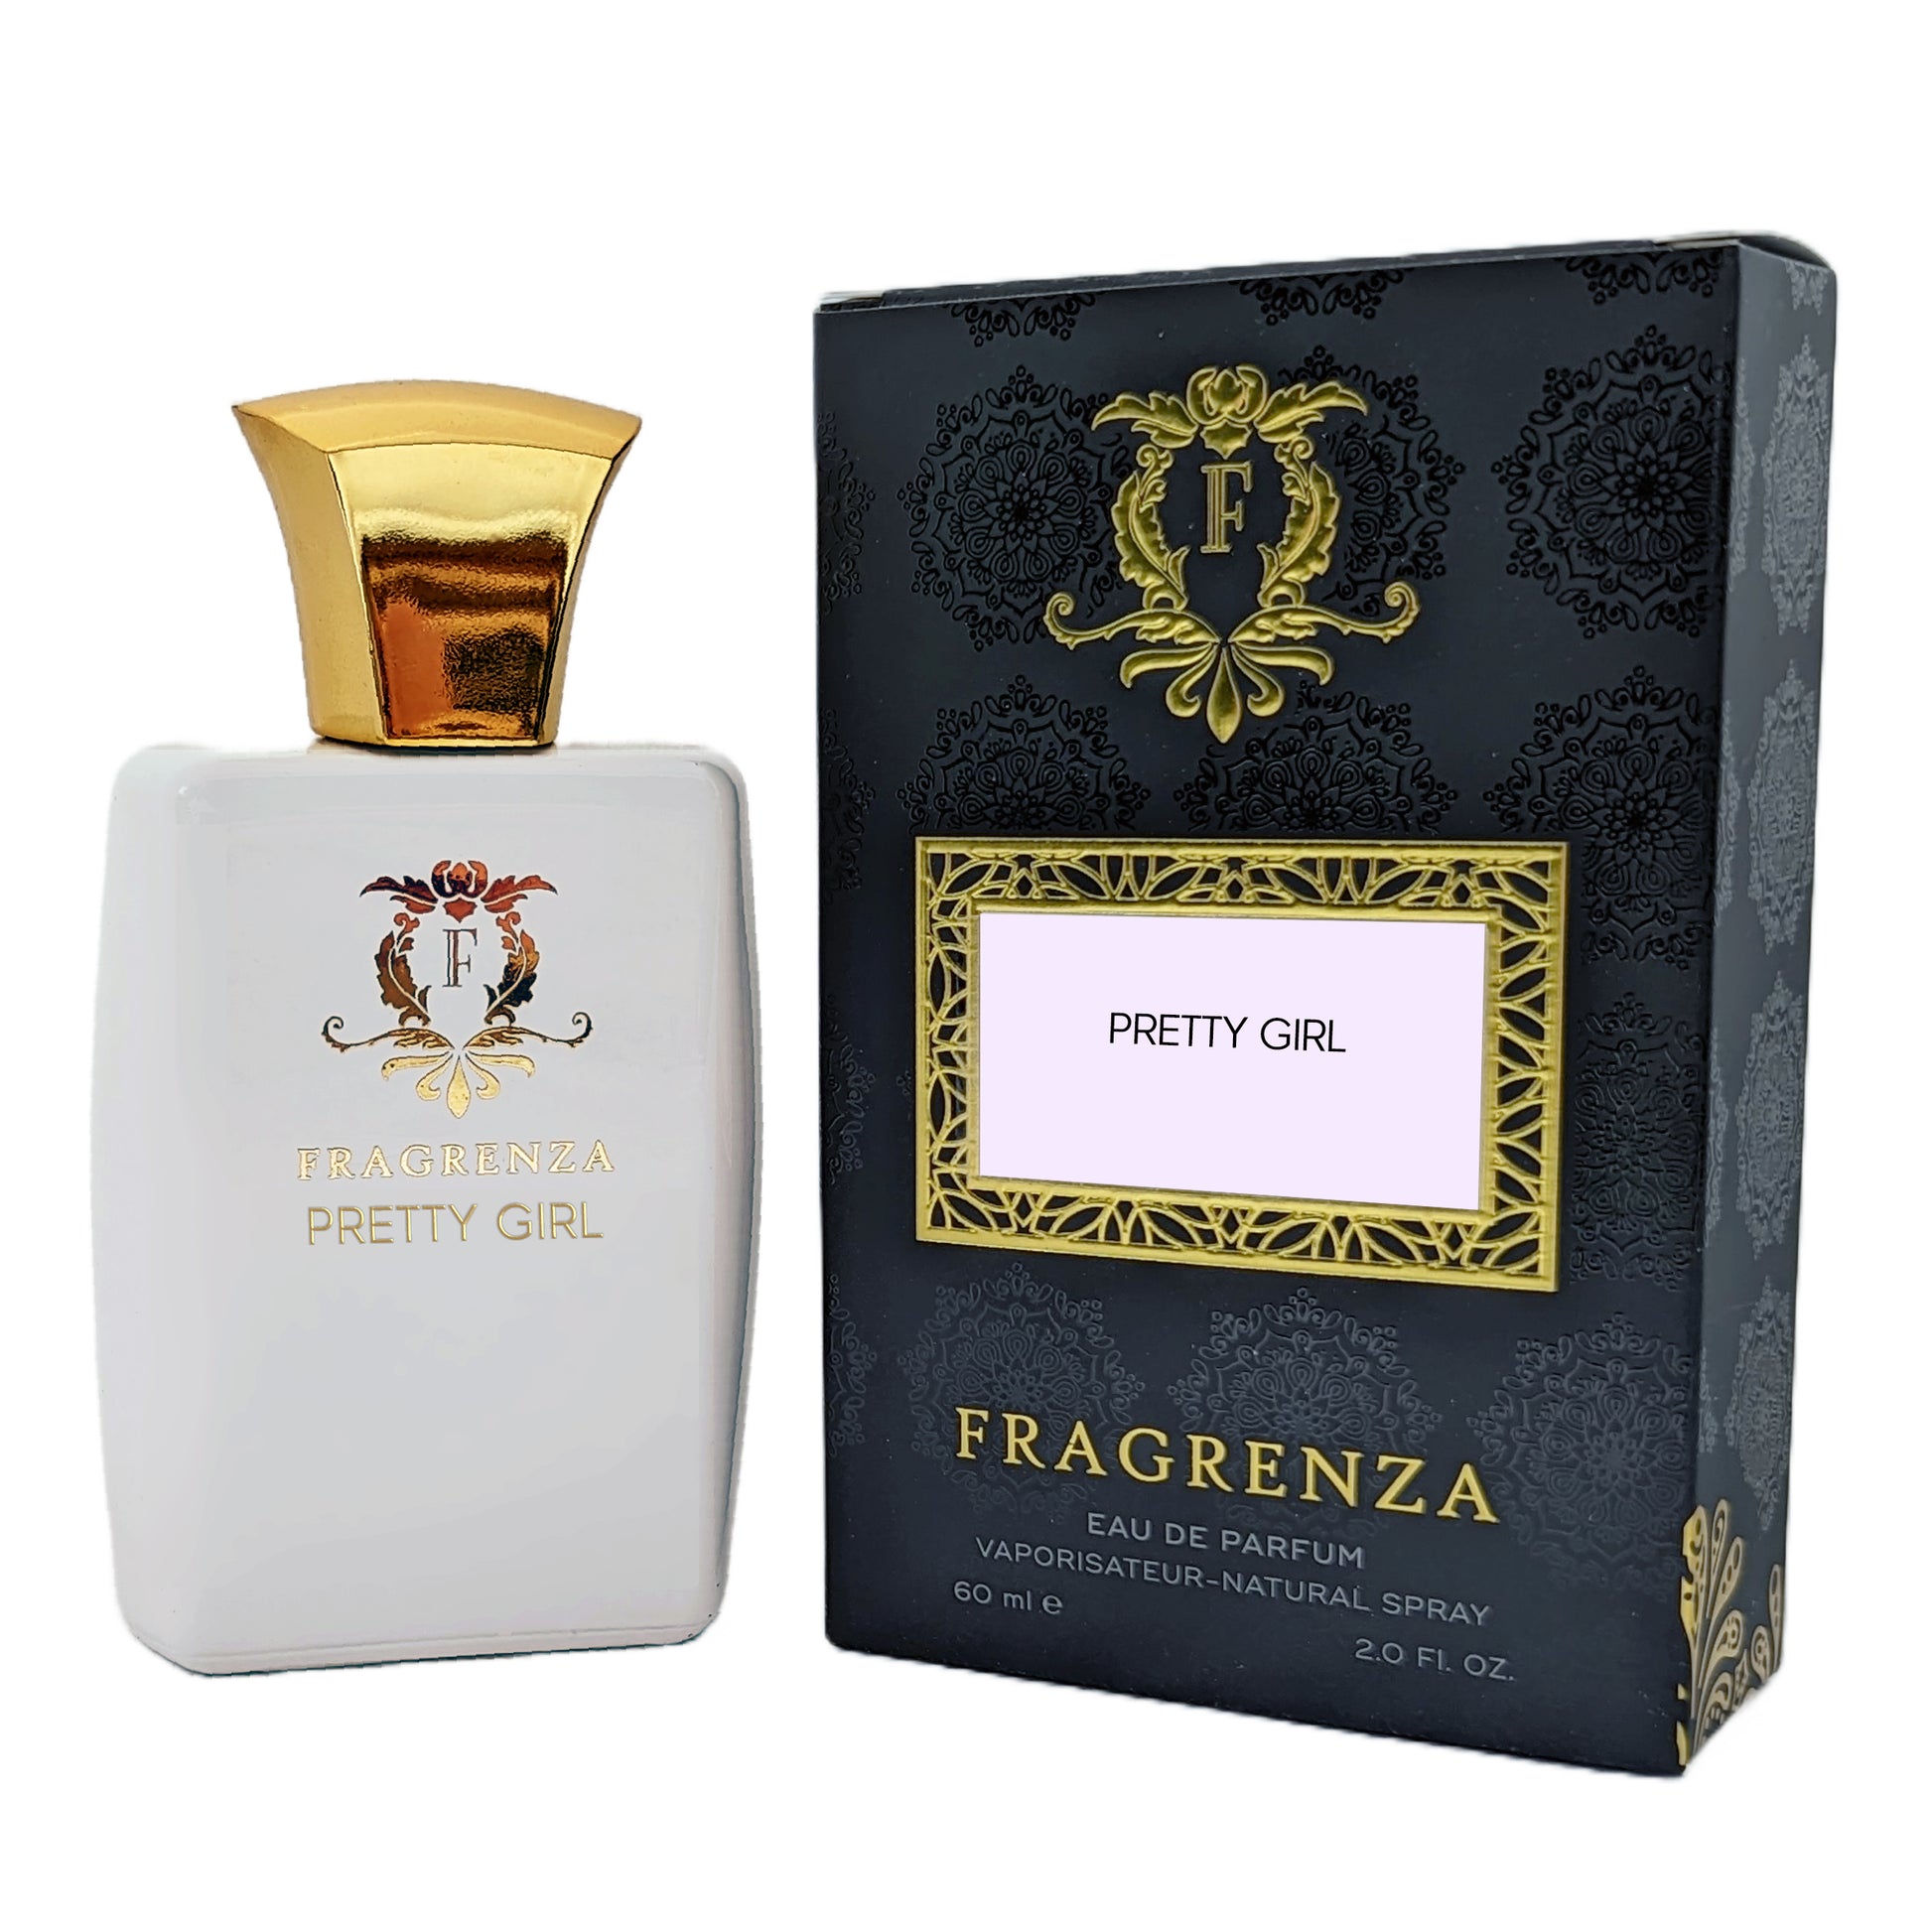 Carolina Herrera Good Girl Eau De Parfum Spray for Women - 2.7 fl oz bottle